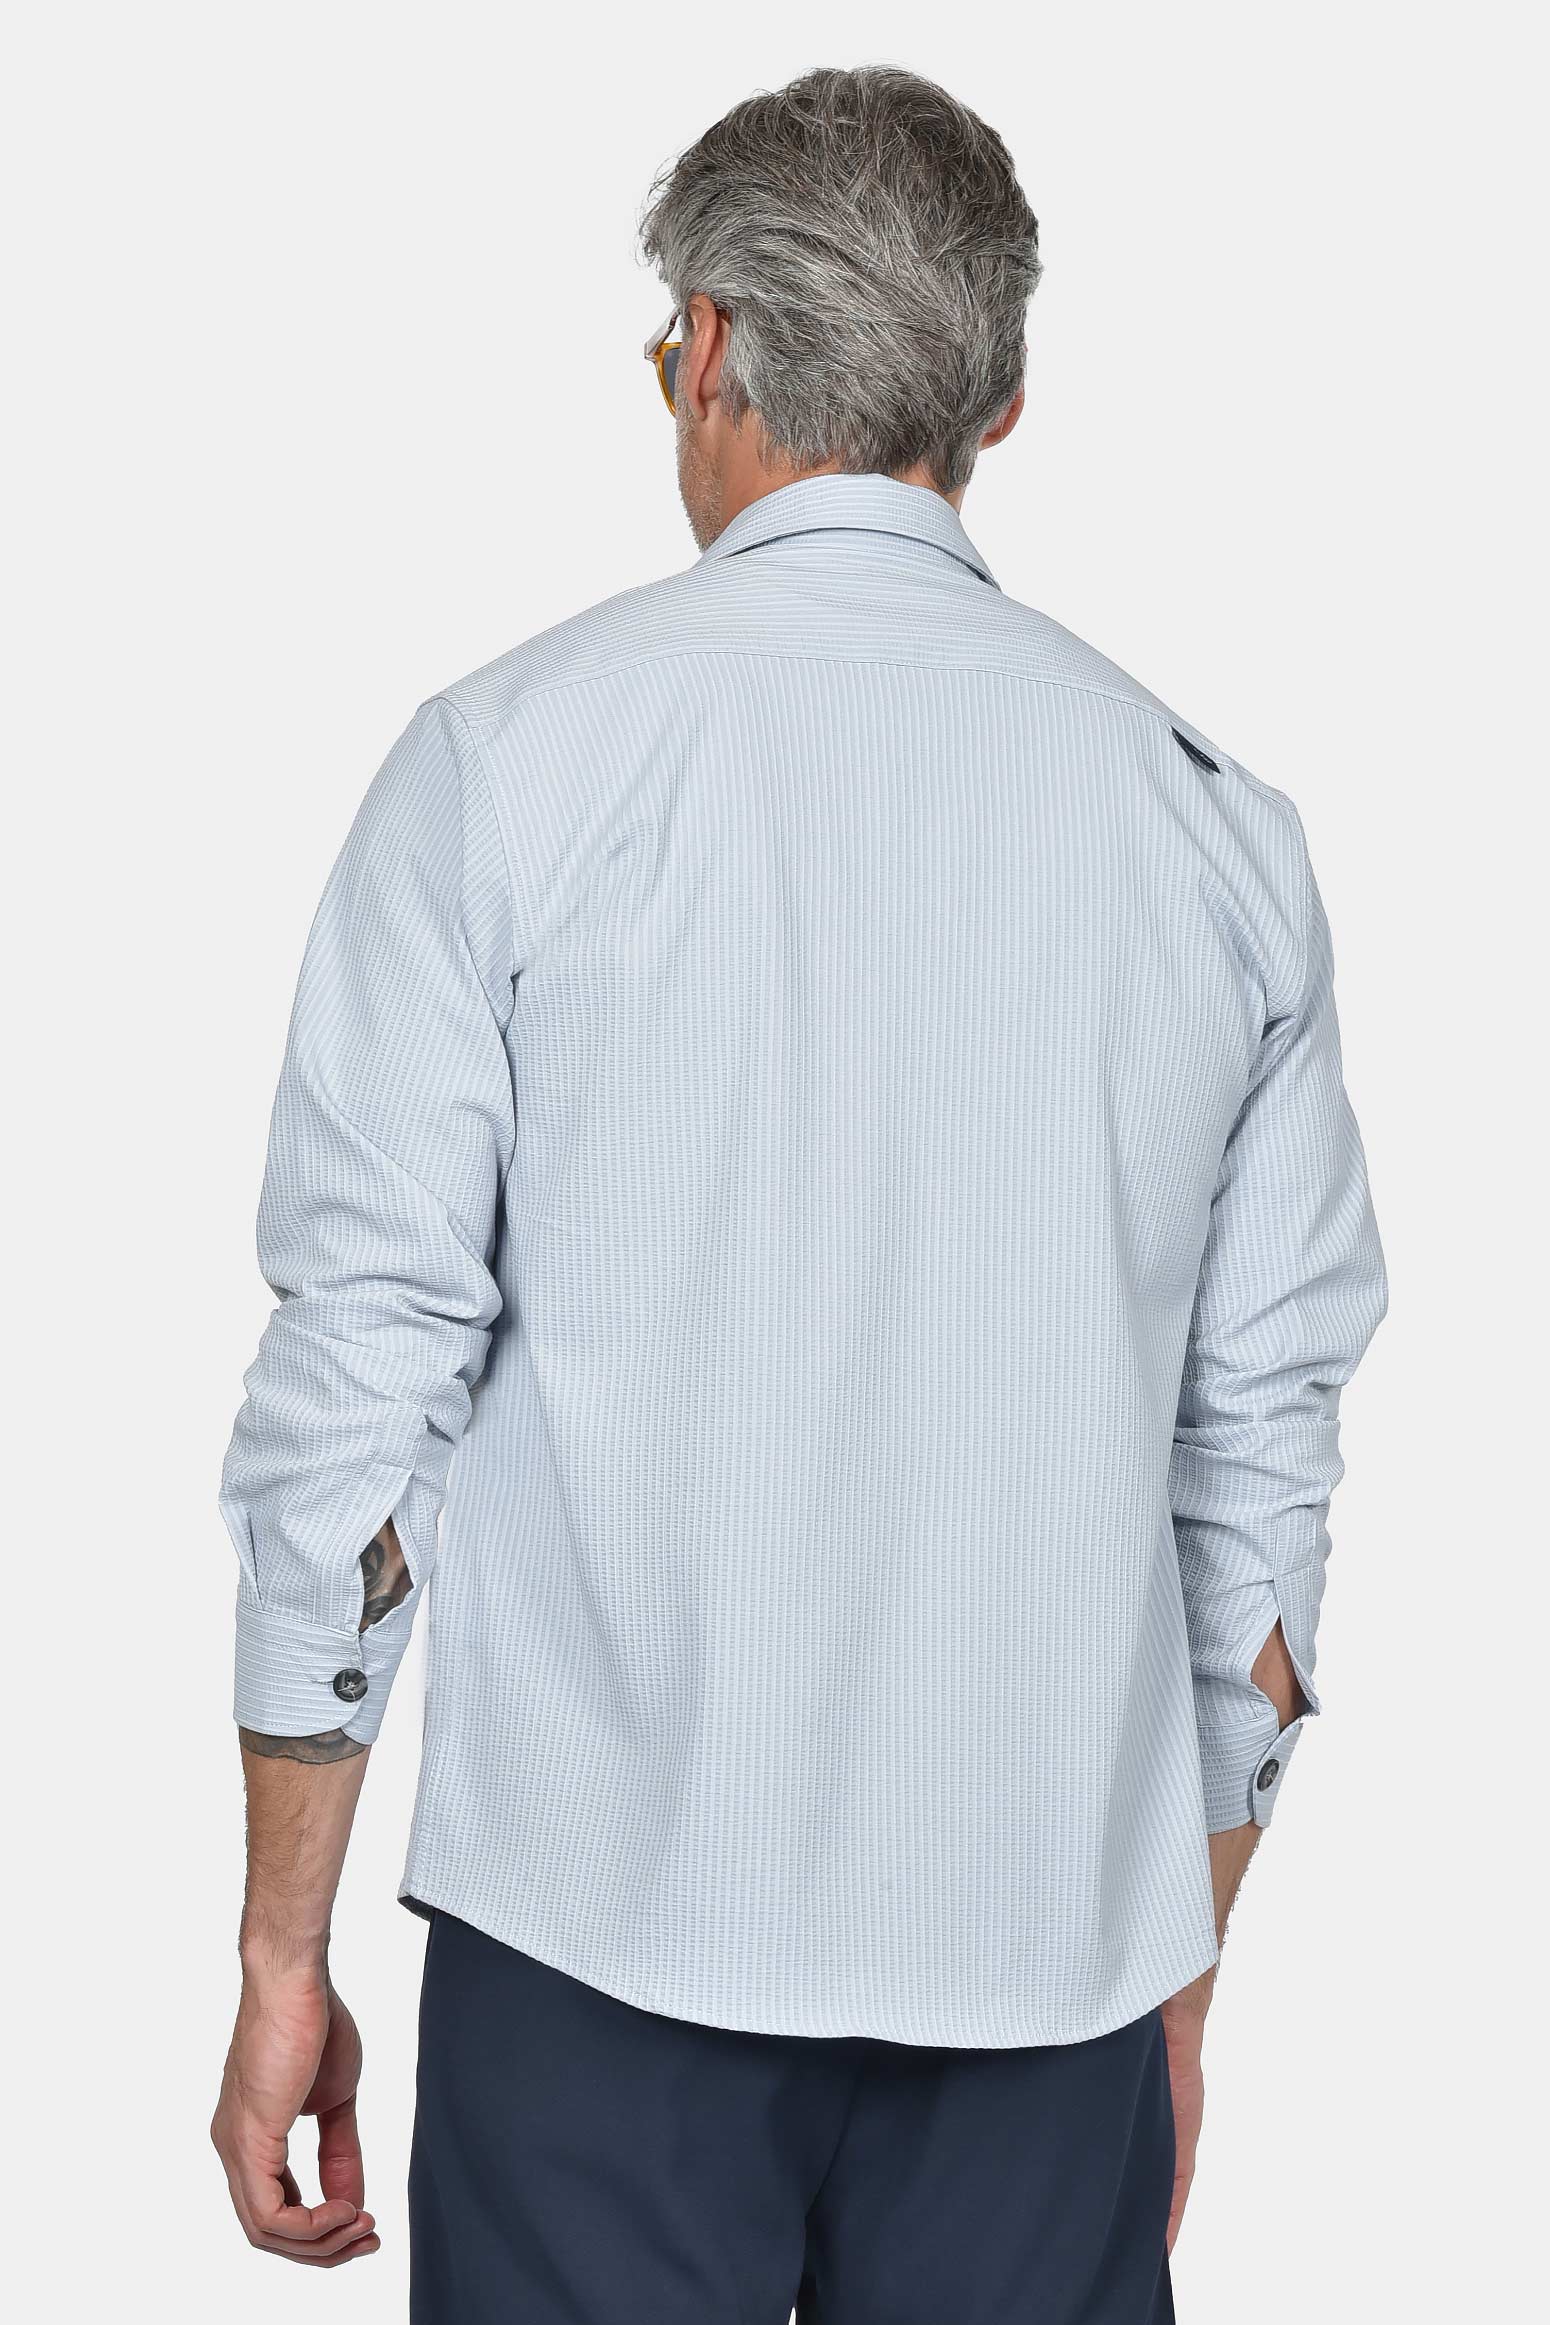 ανδρικό-γκοφρέ-πουκάμισο-100%-βαμβάκι